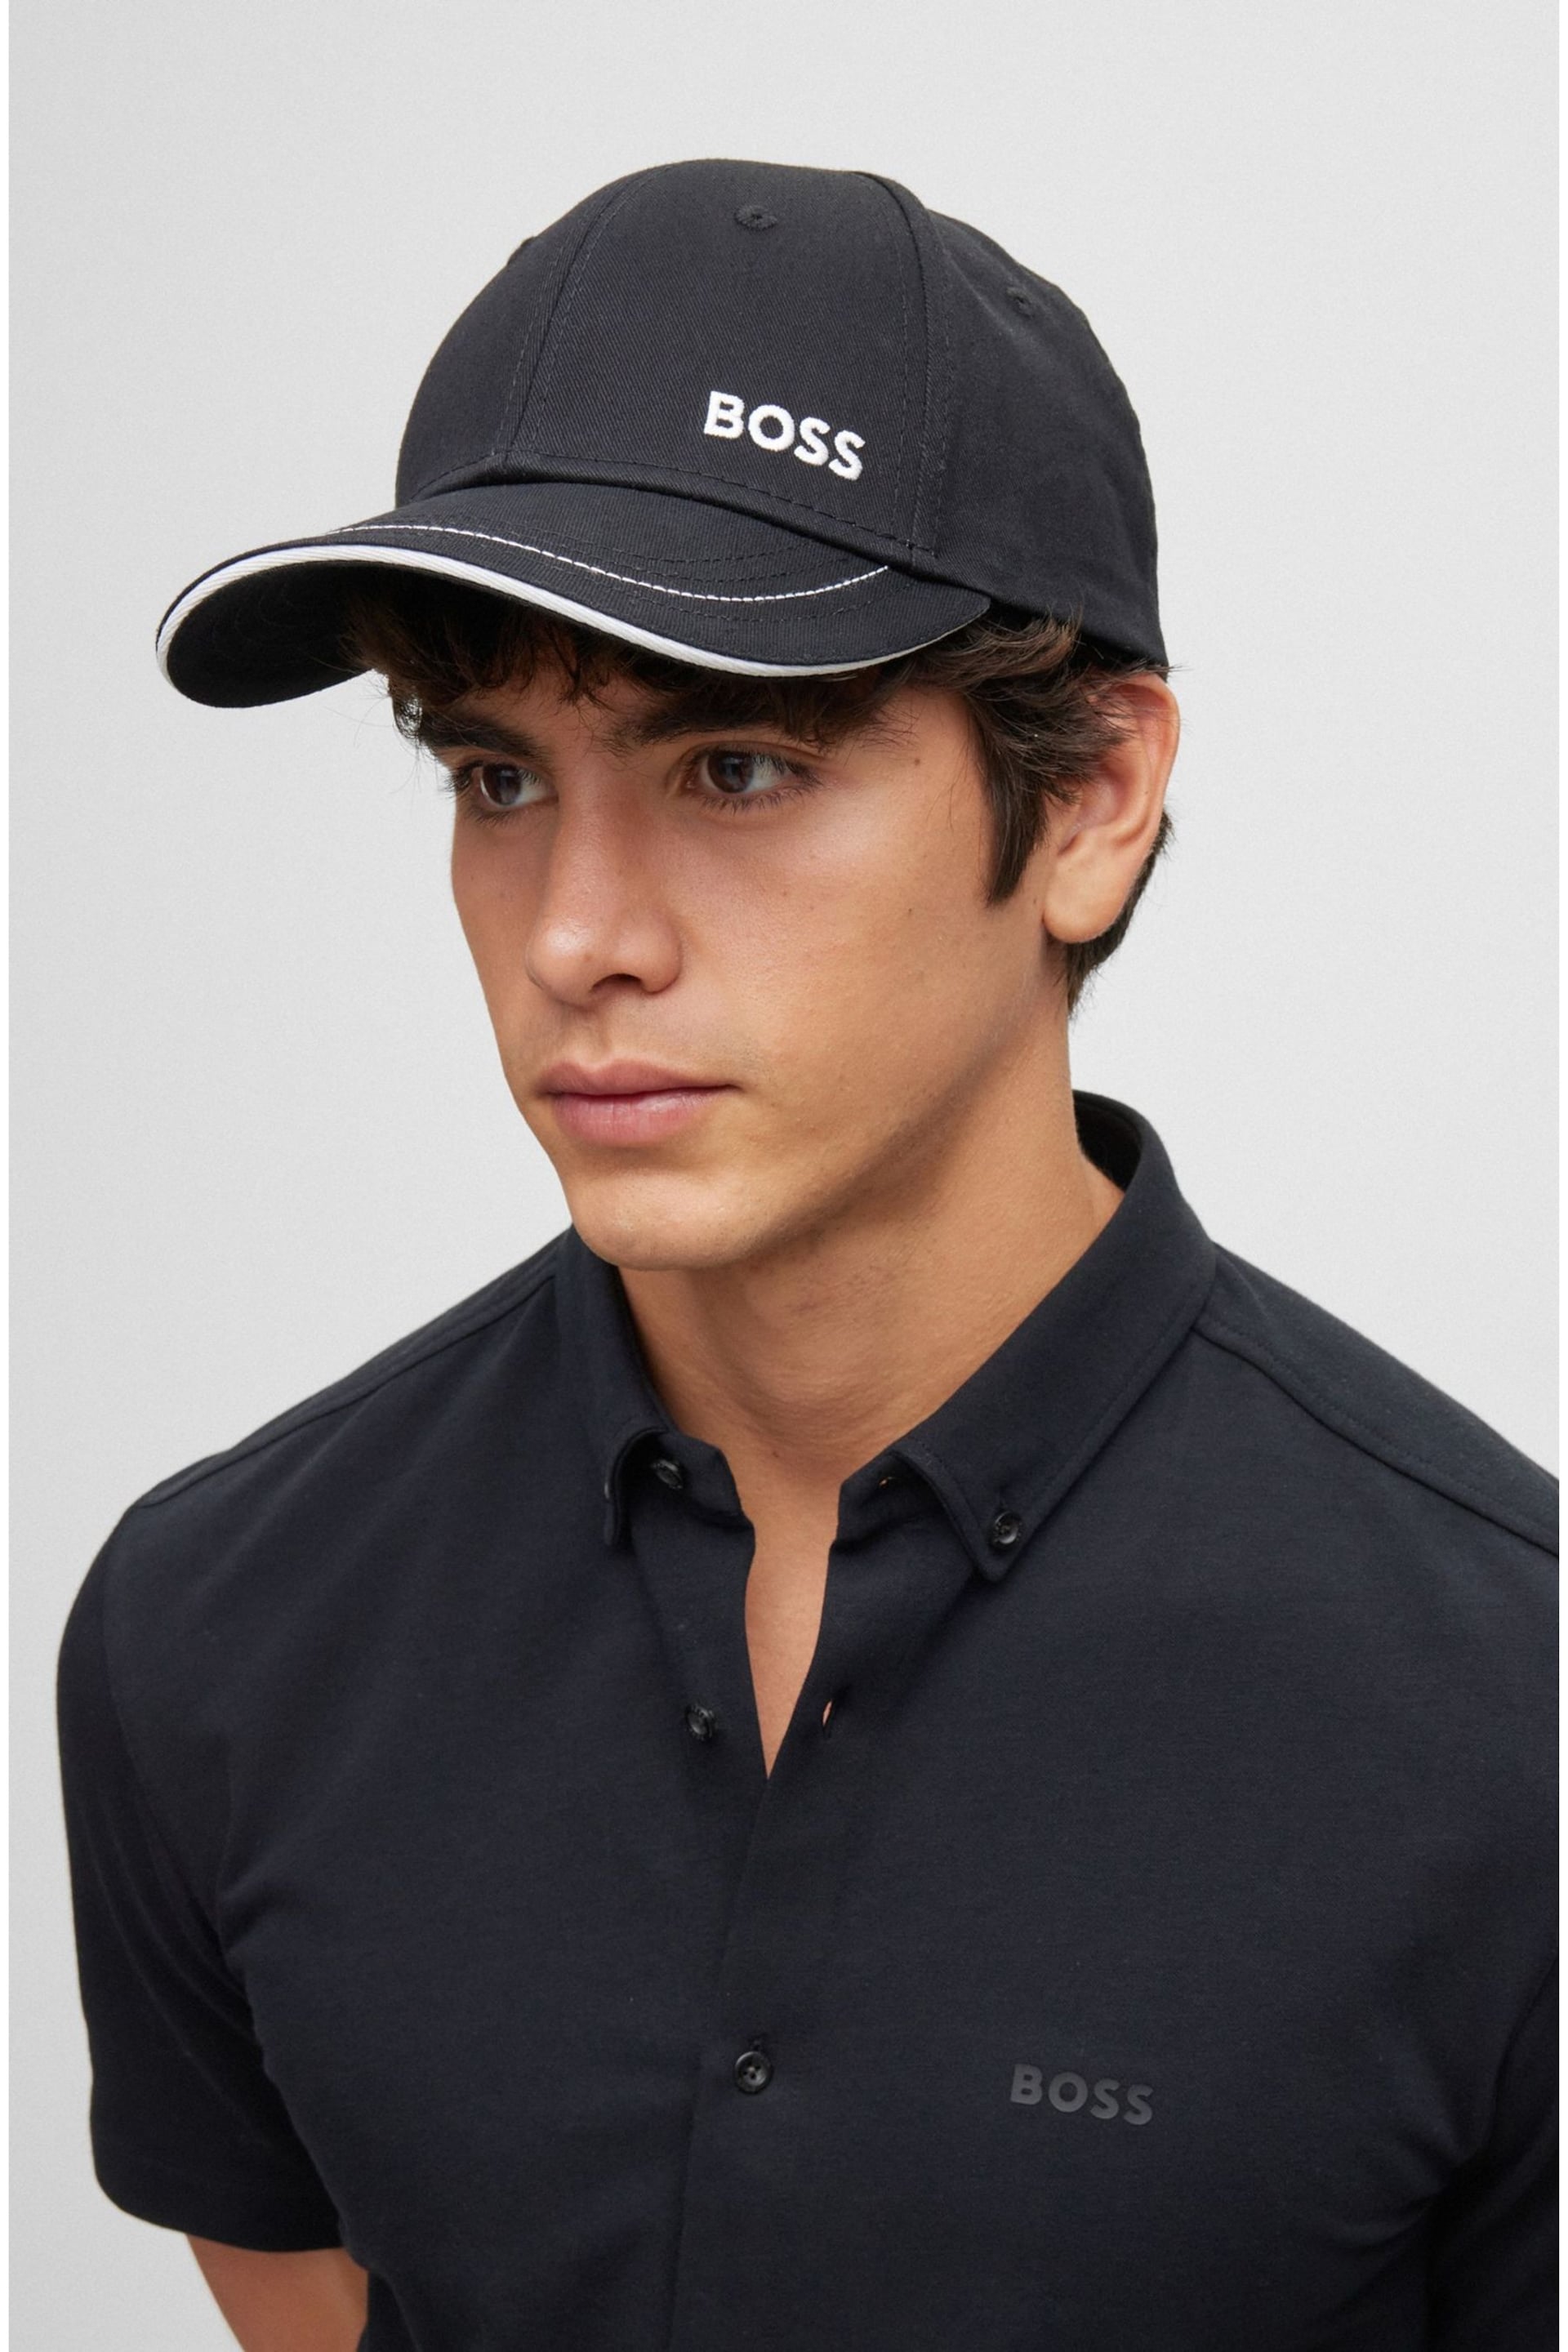 BOSS Black Printed Logo Cap - Image 1 of 5